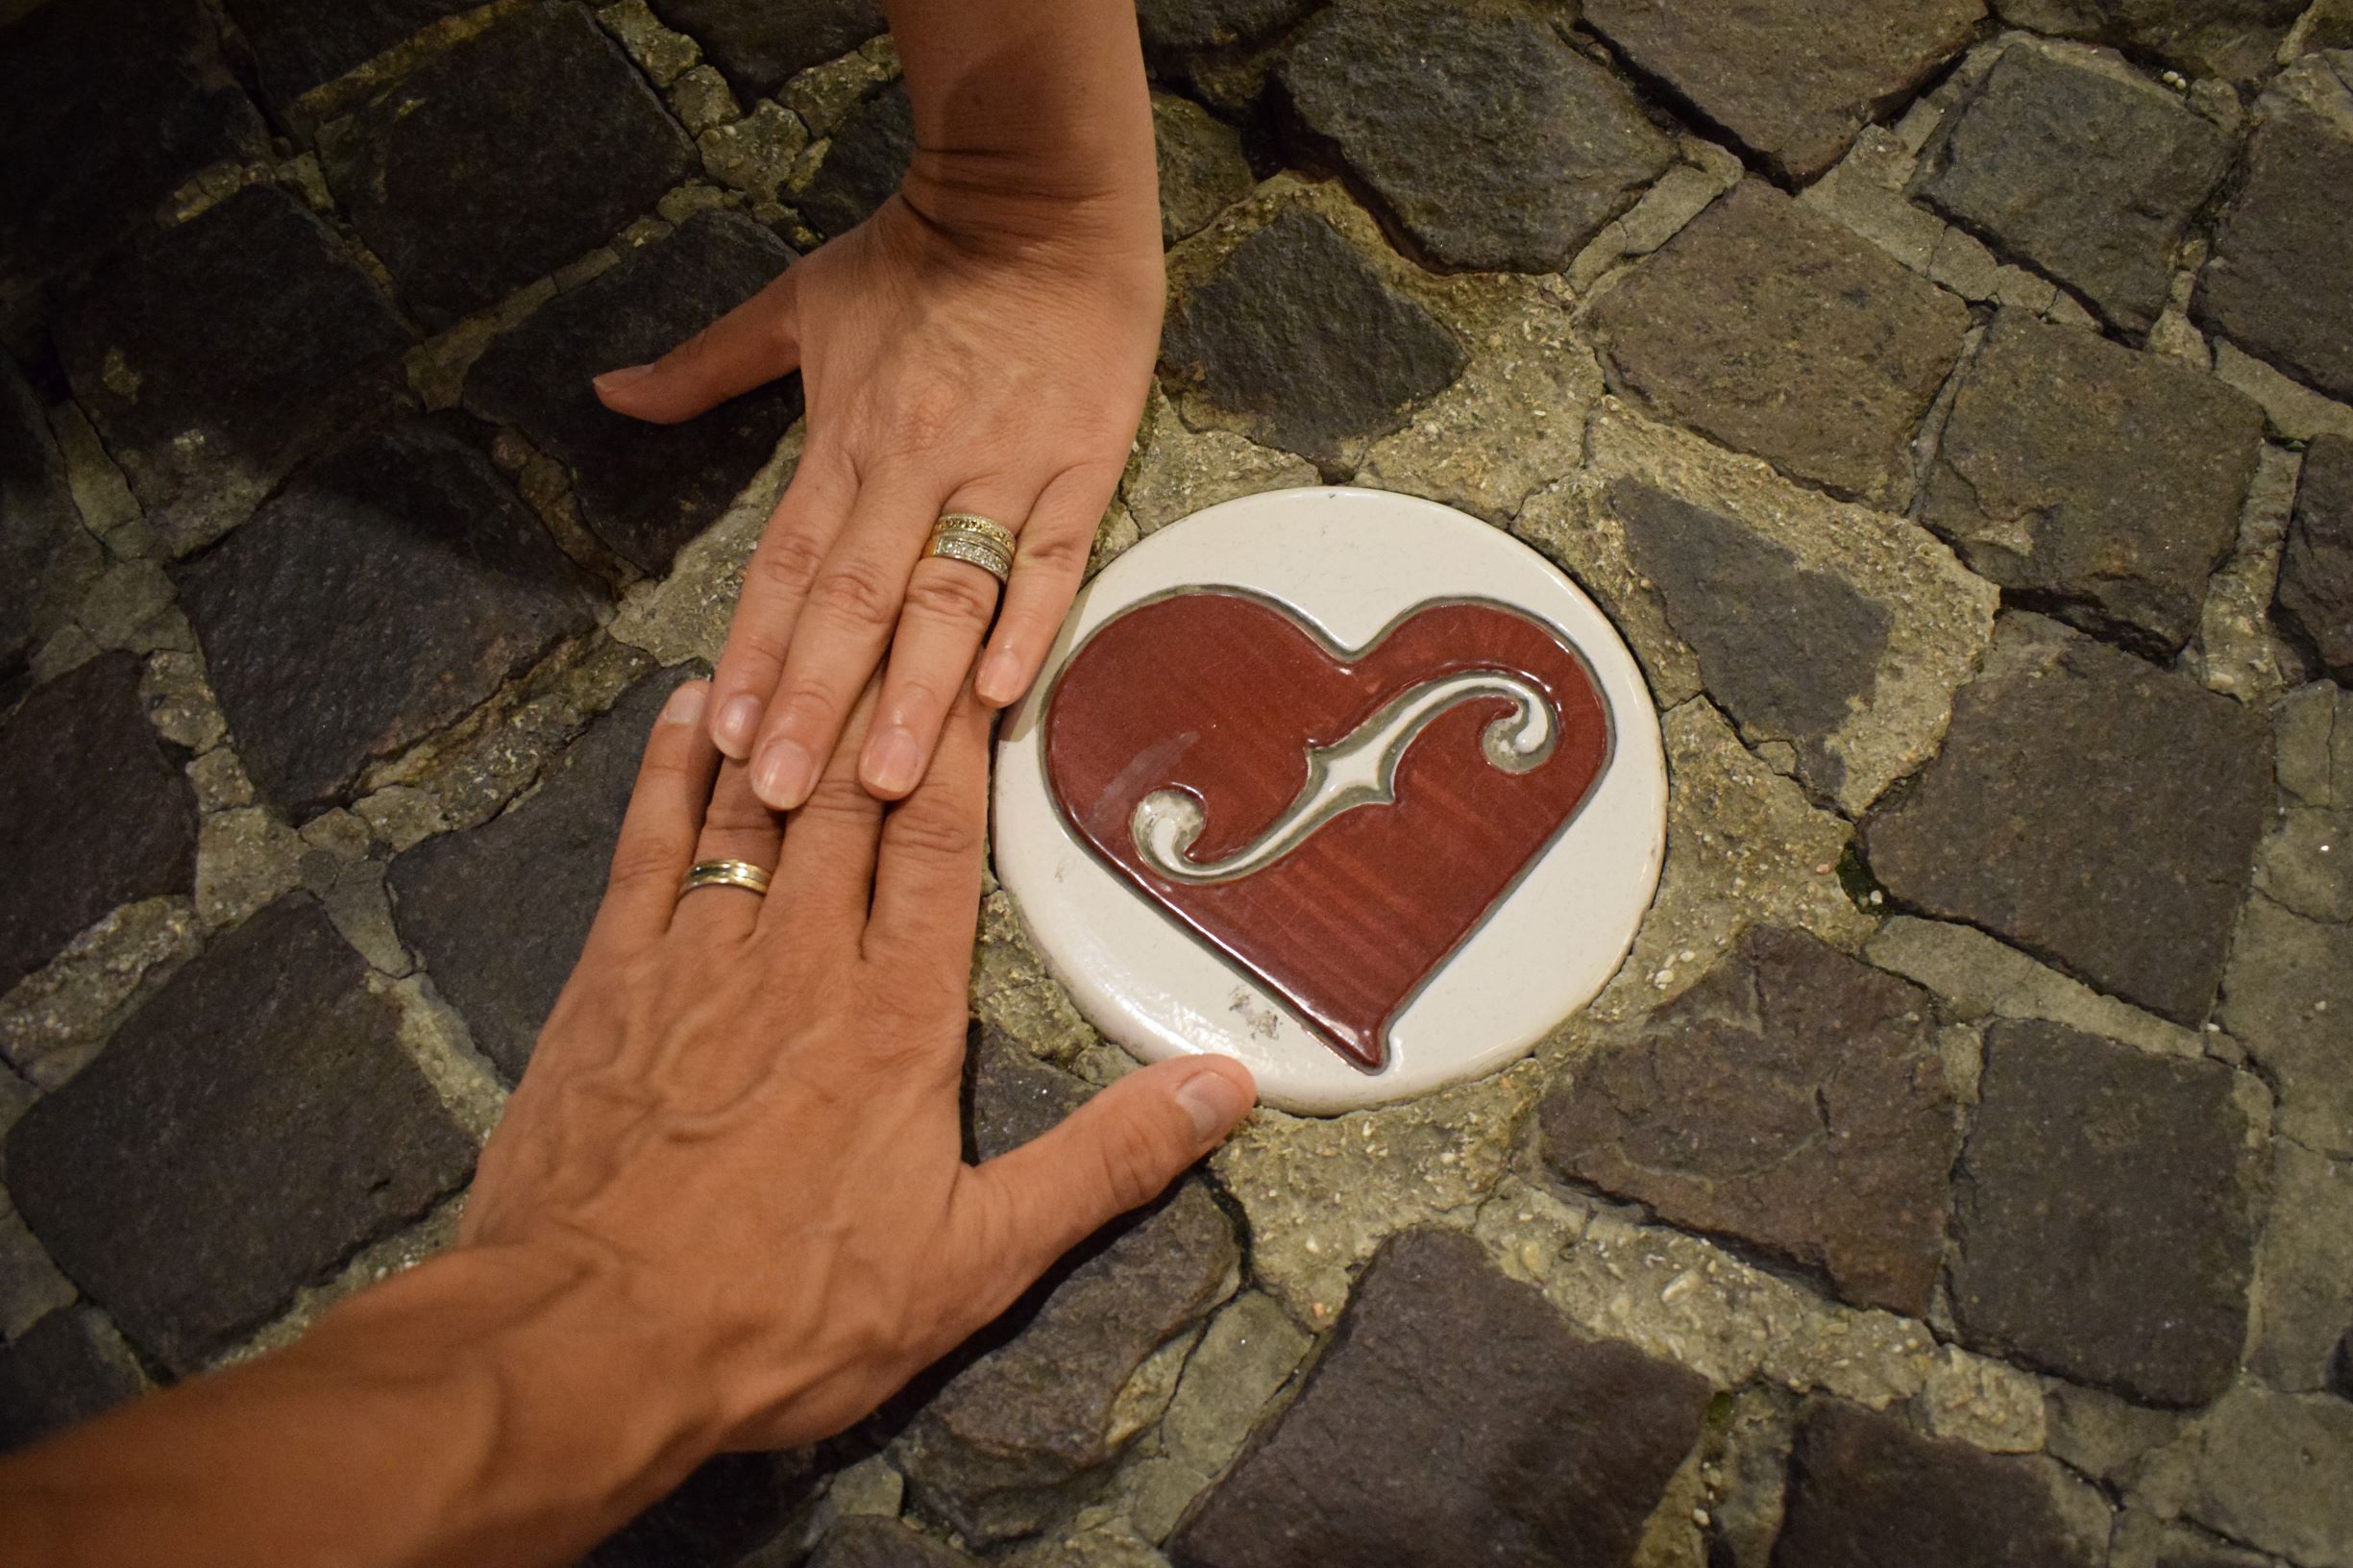 Katurakkautta Pesarossa, FinInTirol | Tarinaa rakkaudesta ja 7 opetusta parisuhteeseen